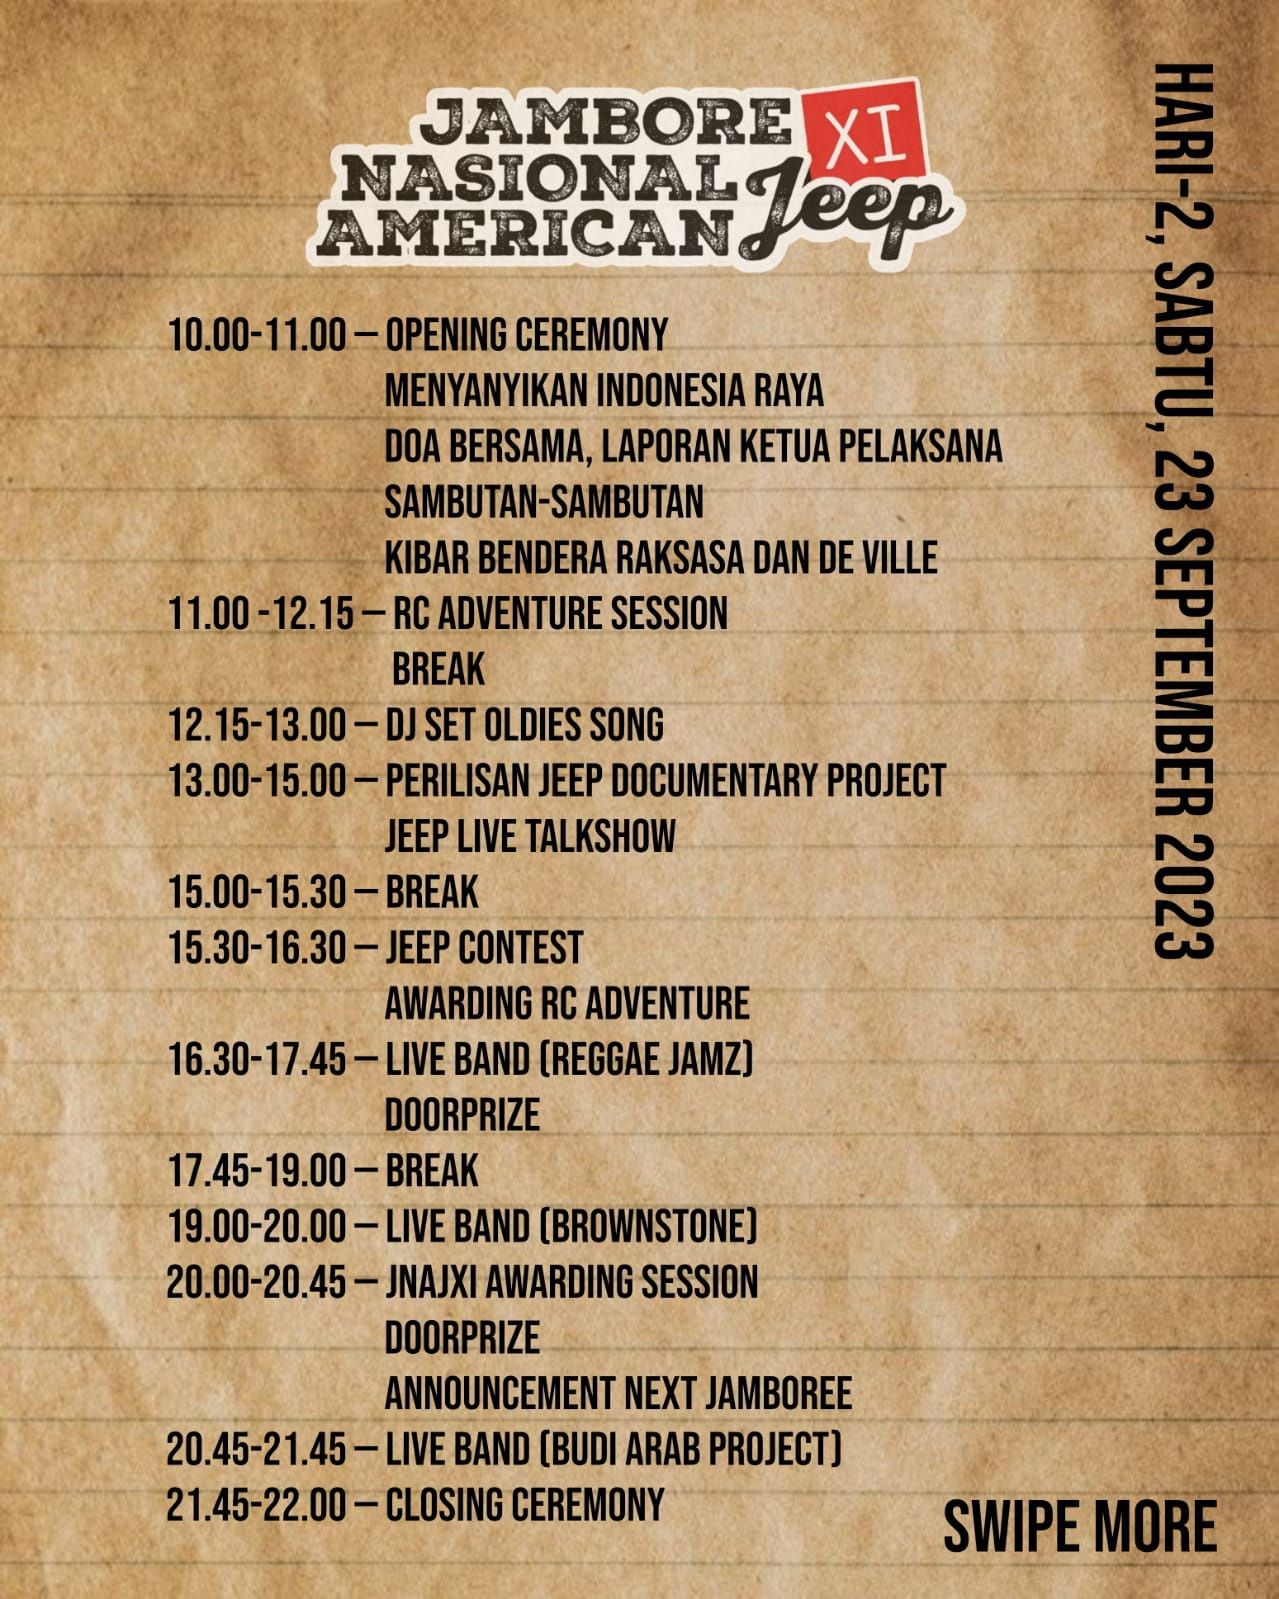 Akan dilaksanakan pada hari kedua event, Perilisan Jeep Documentary Project dan Jeep Live Talkshow.*/   